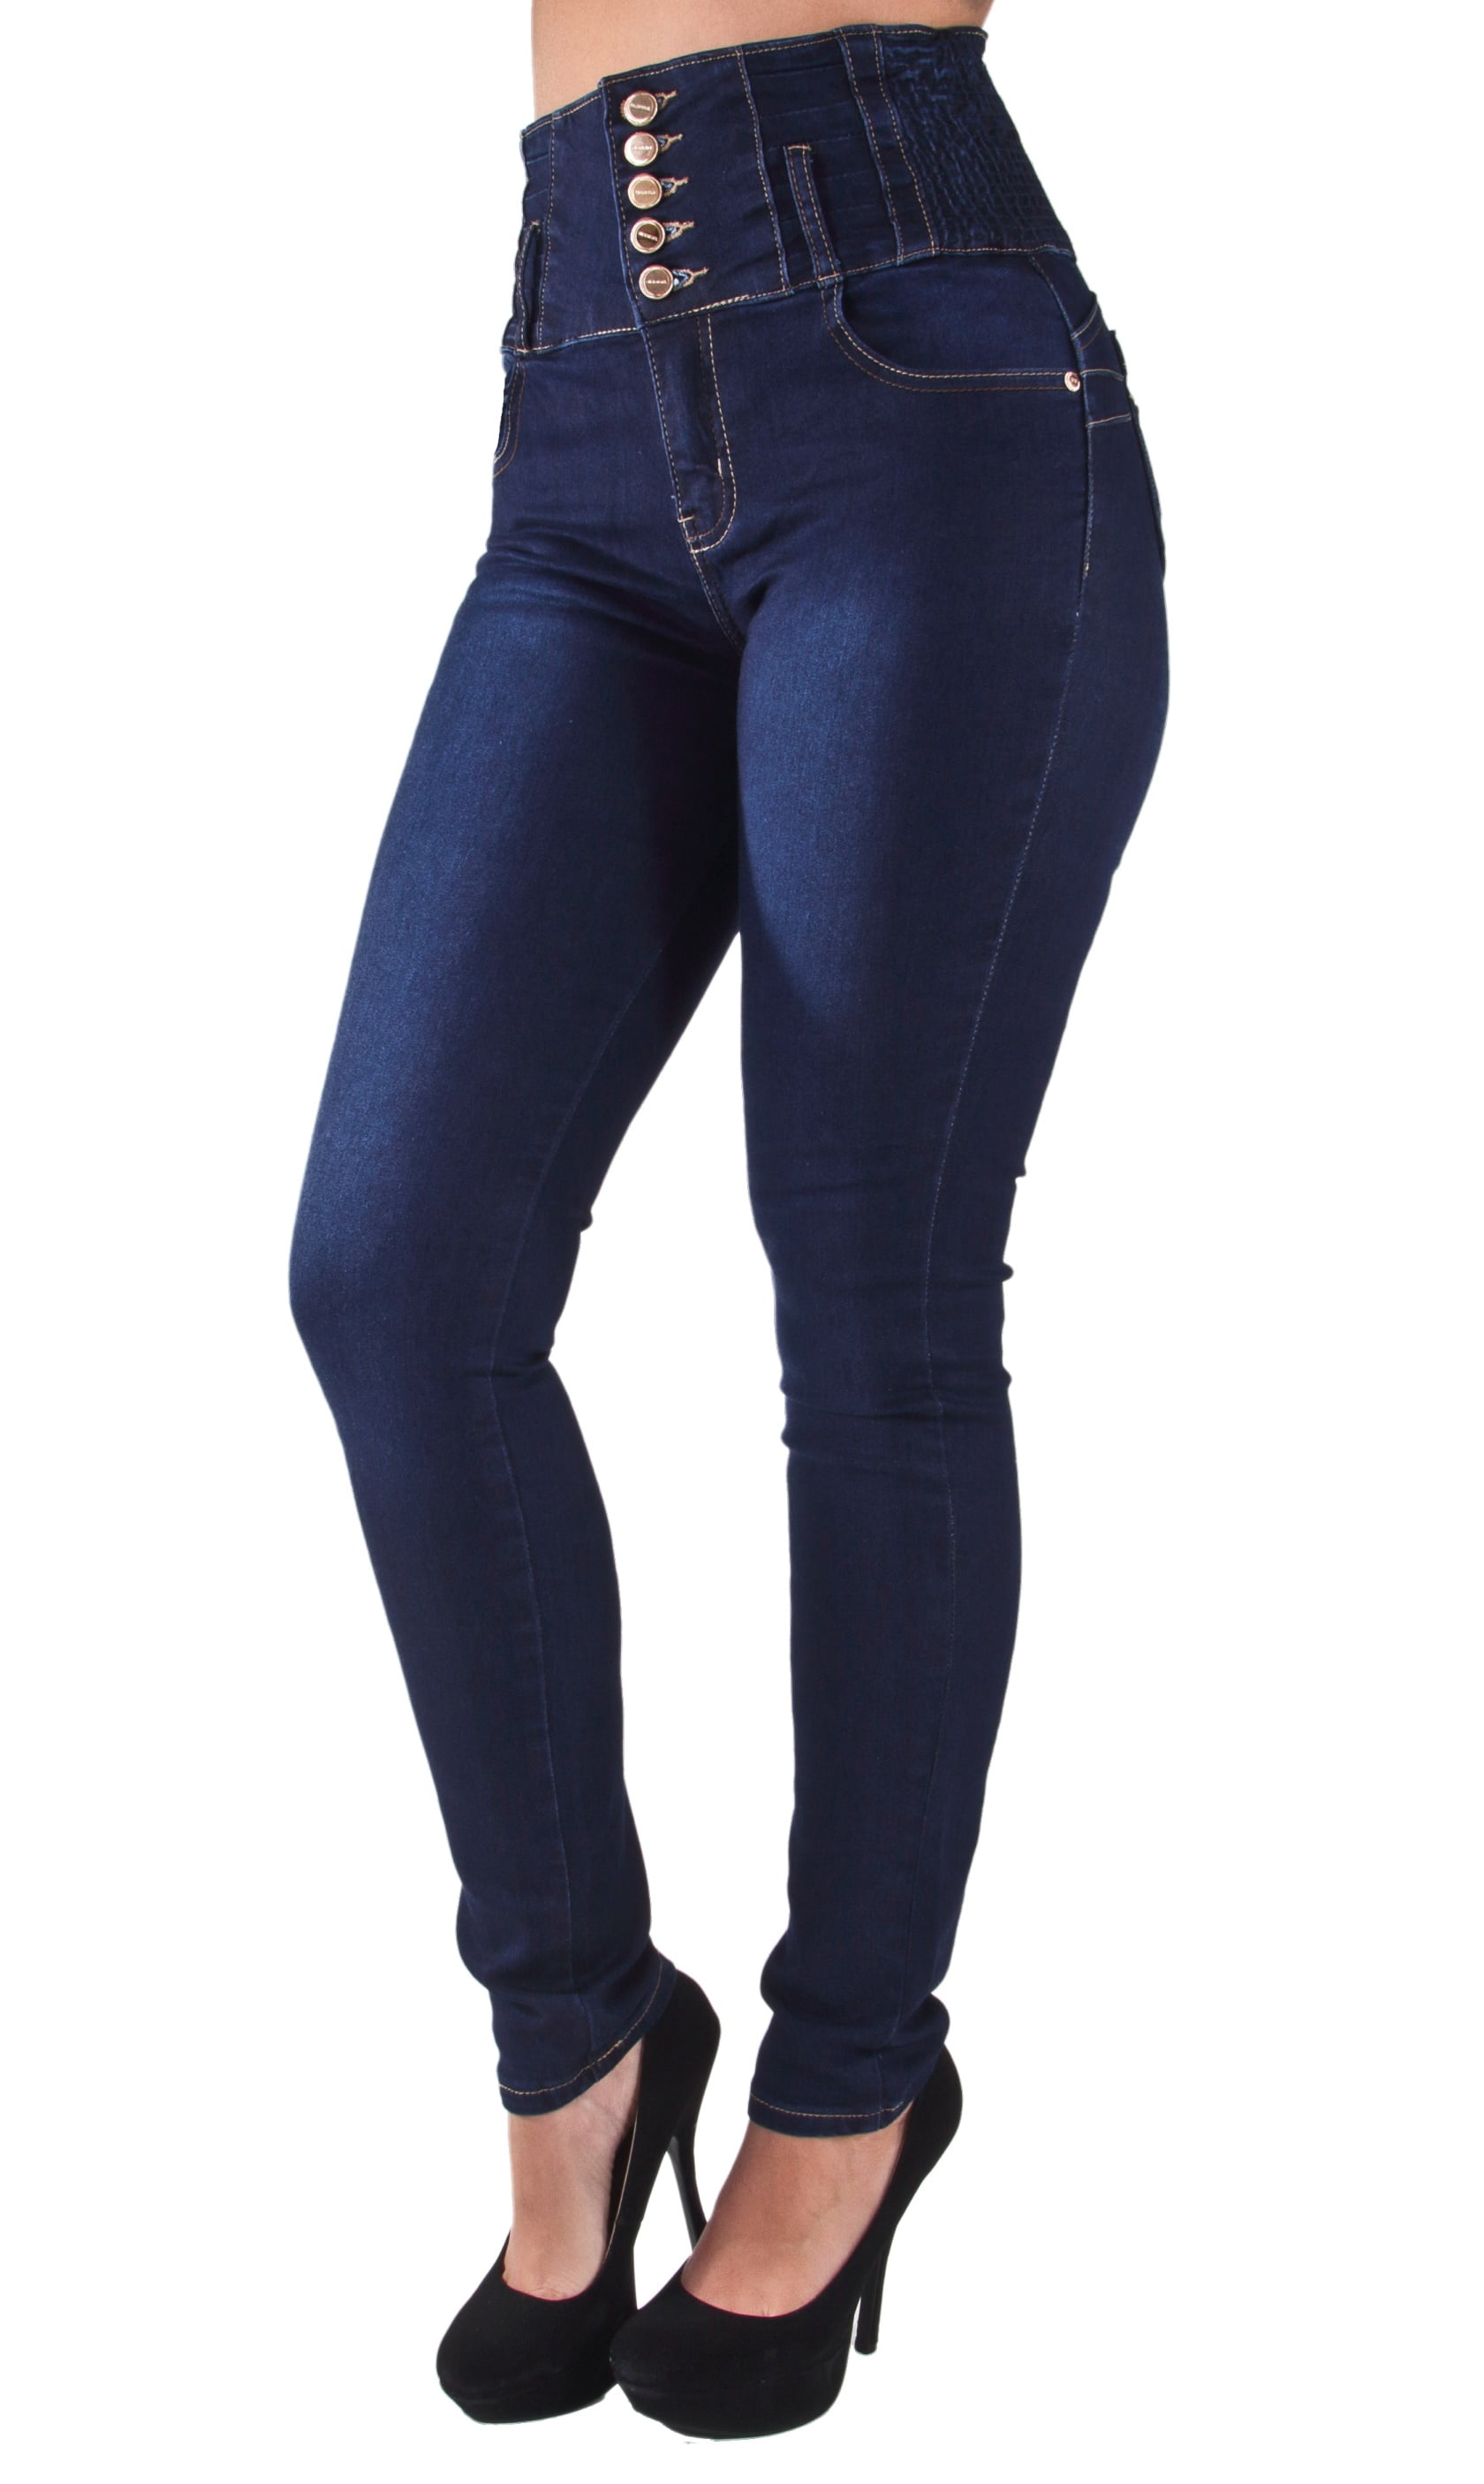 cristina orlando recommends Brazilian Jeans Plus Size